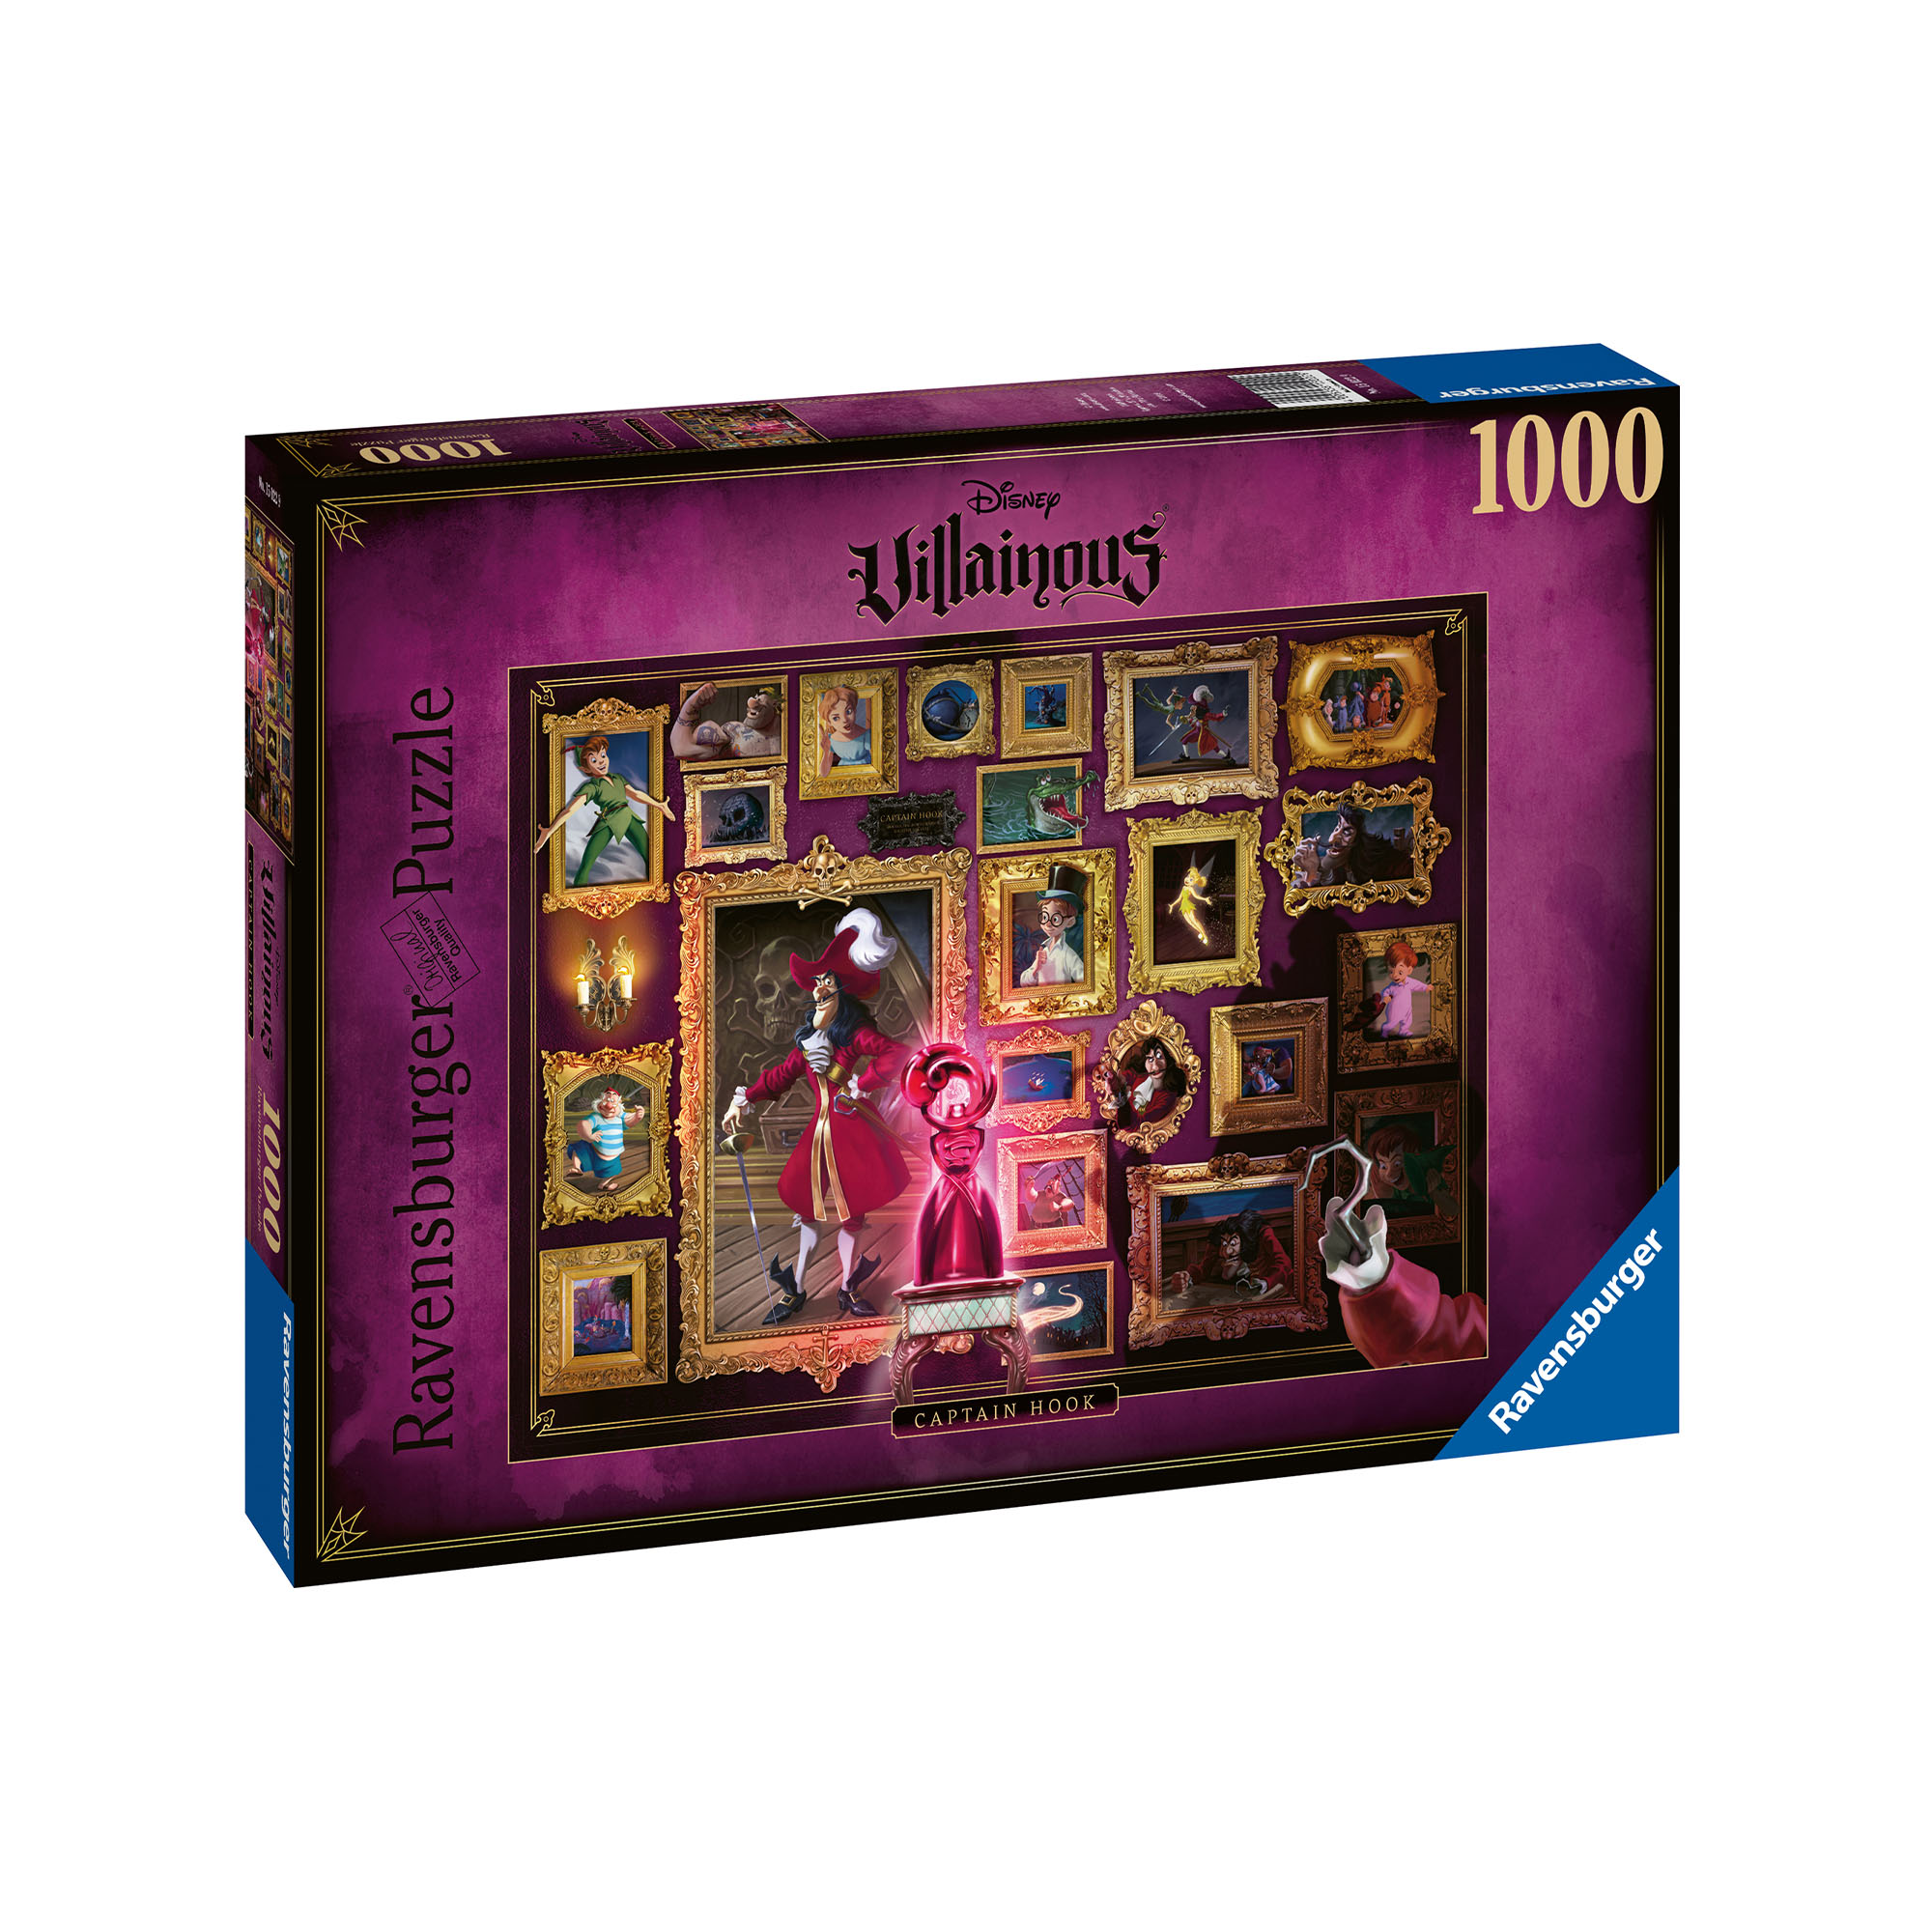 Ravensburger Puzzle 1000 pezzi - Villanous: Capt.Hook, , large